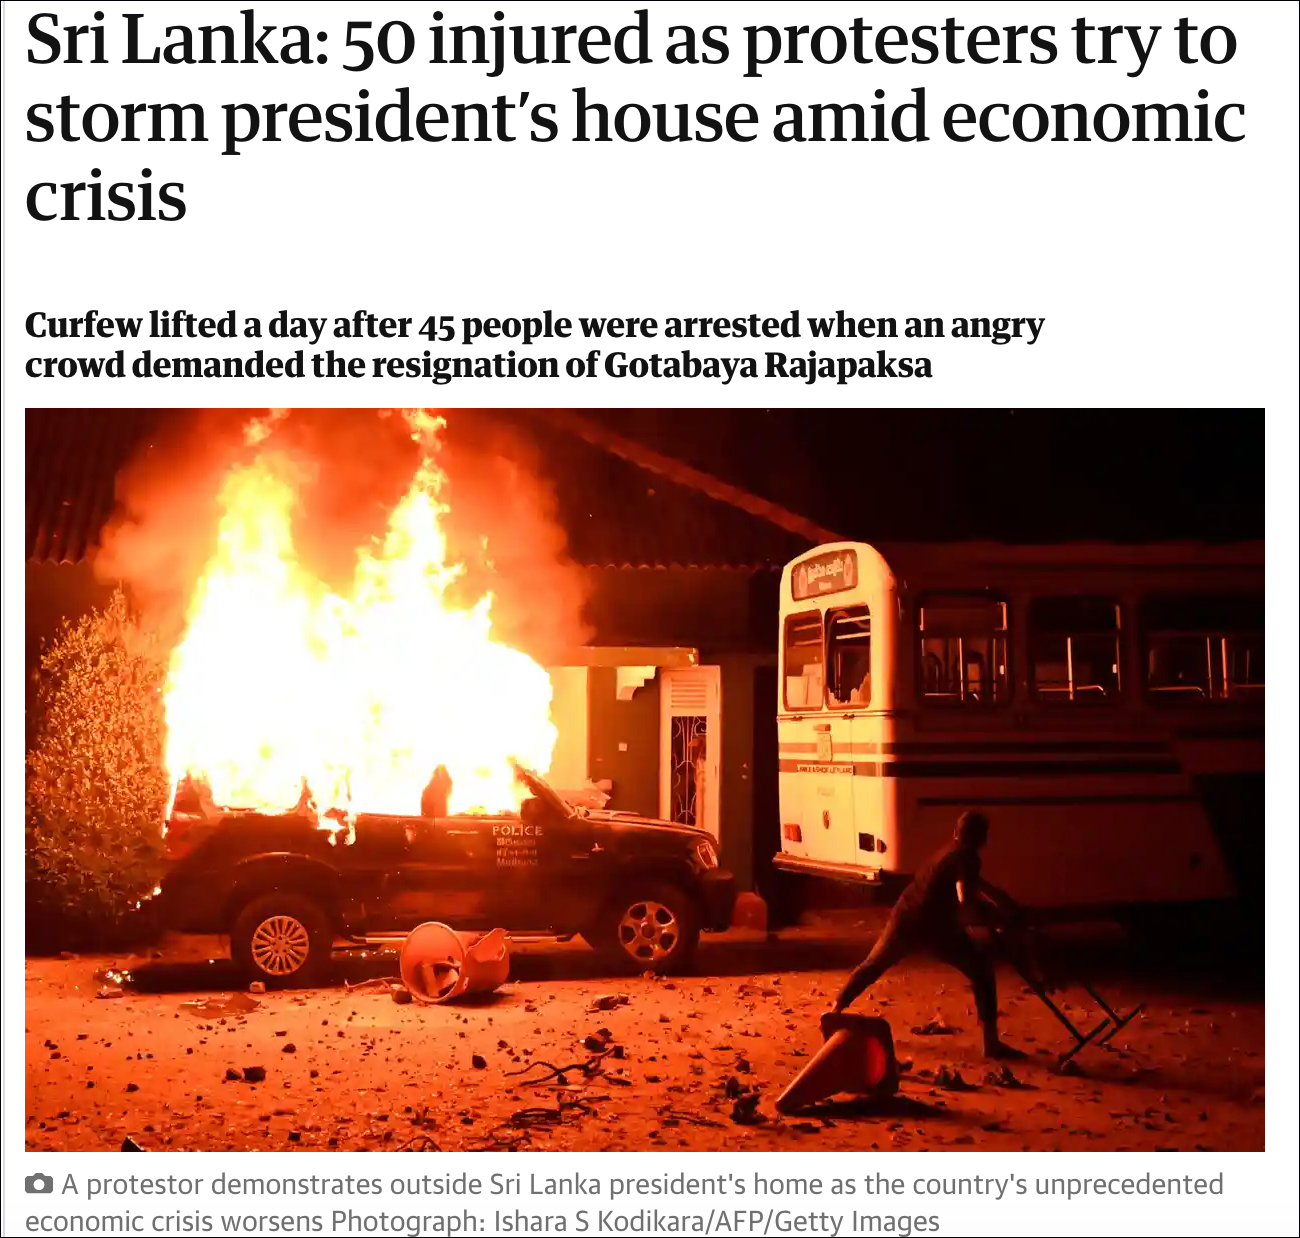 英国《卫报》：3月31日晚，斯里兰卡抗议者冲击总统官邸，导致50人受伤